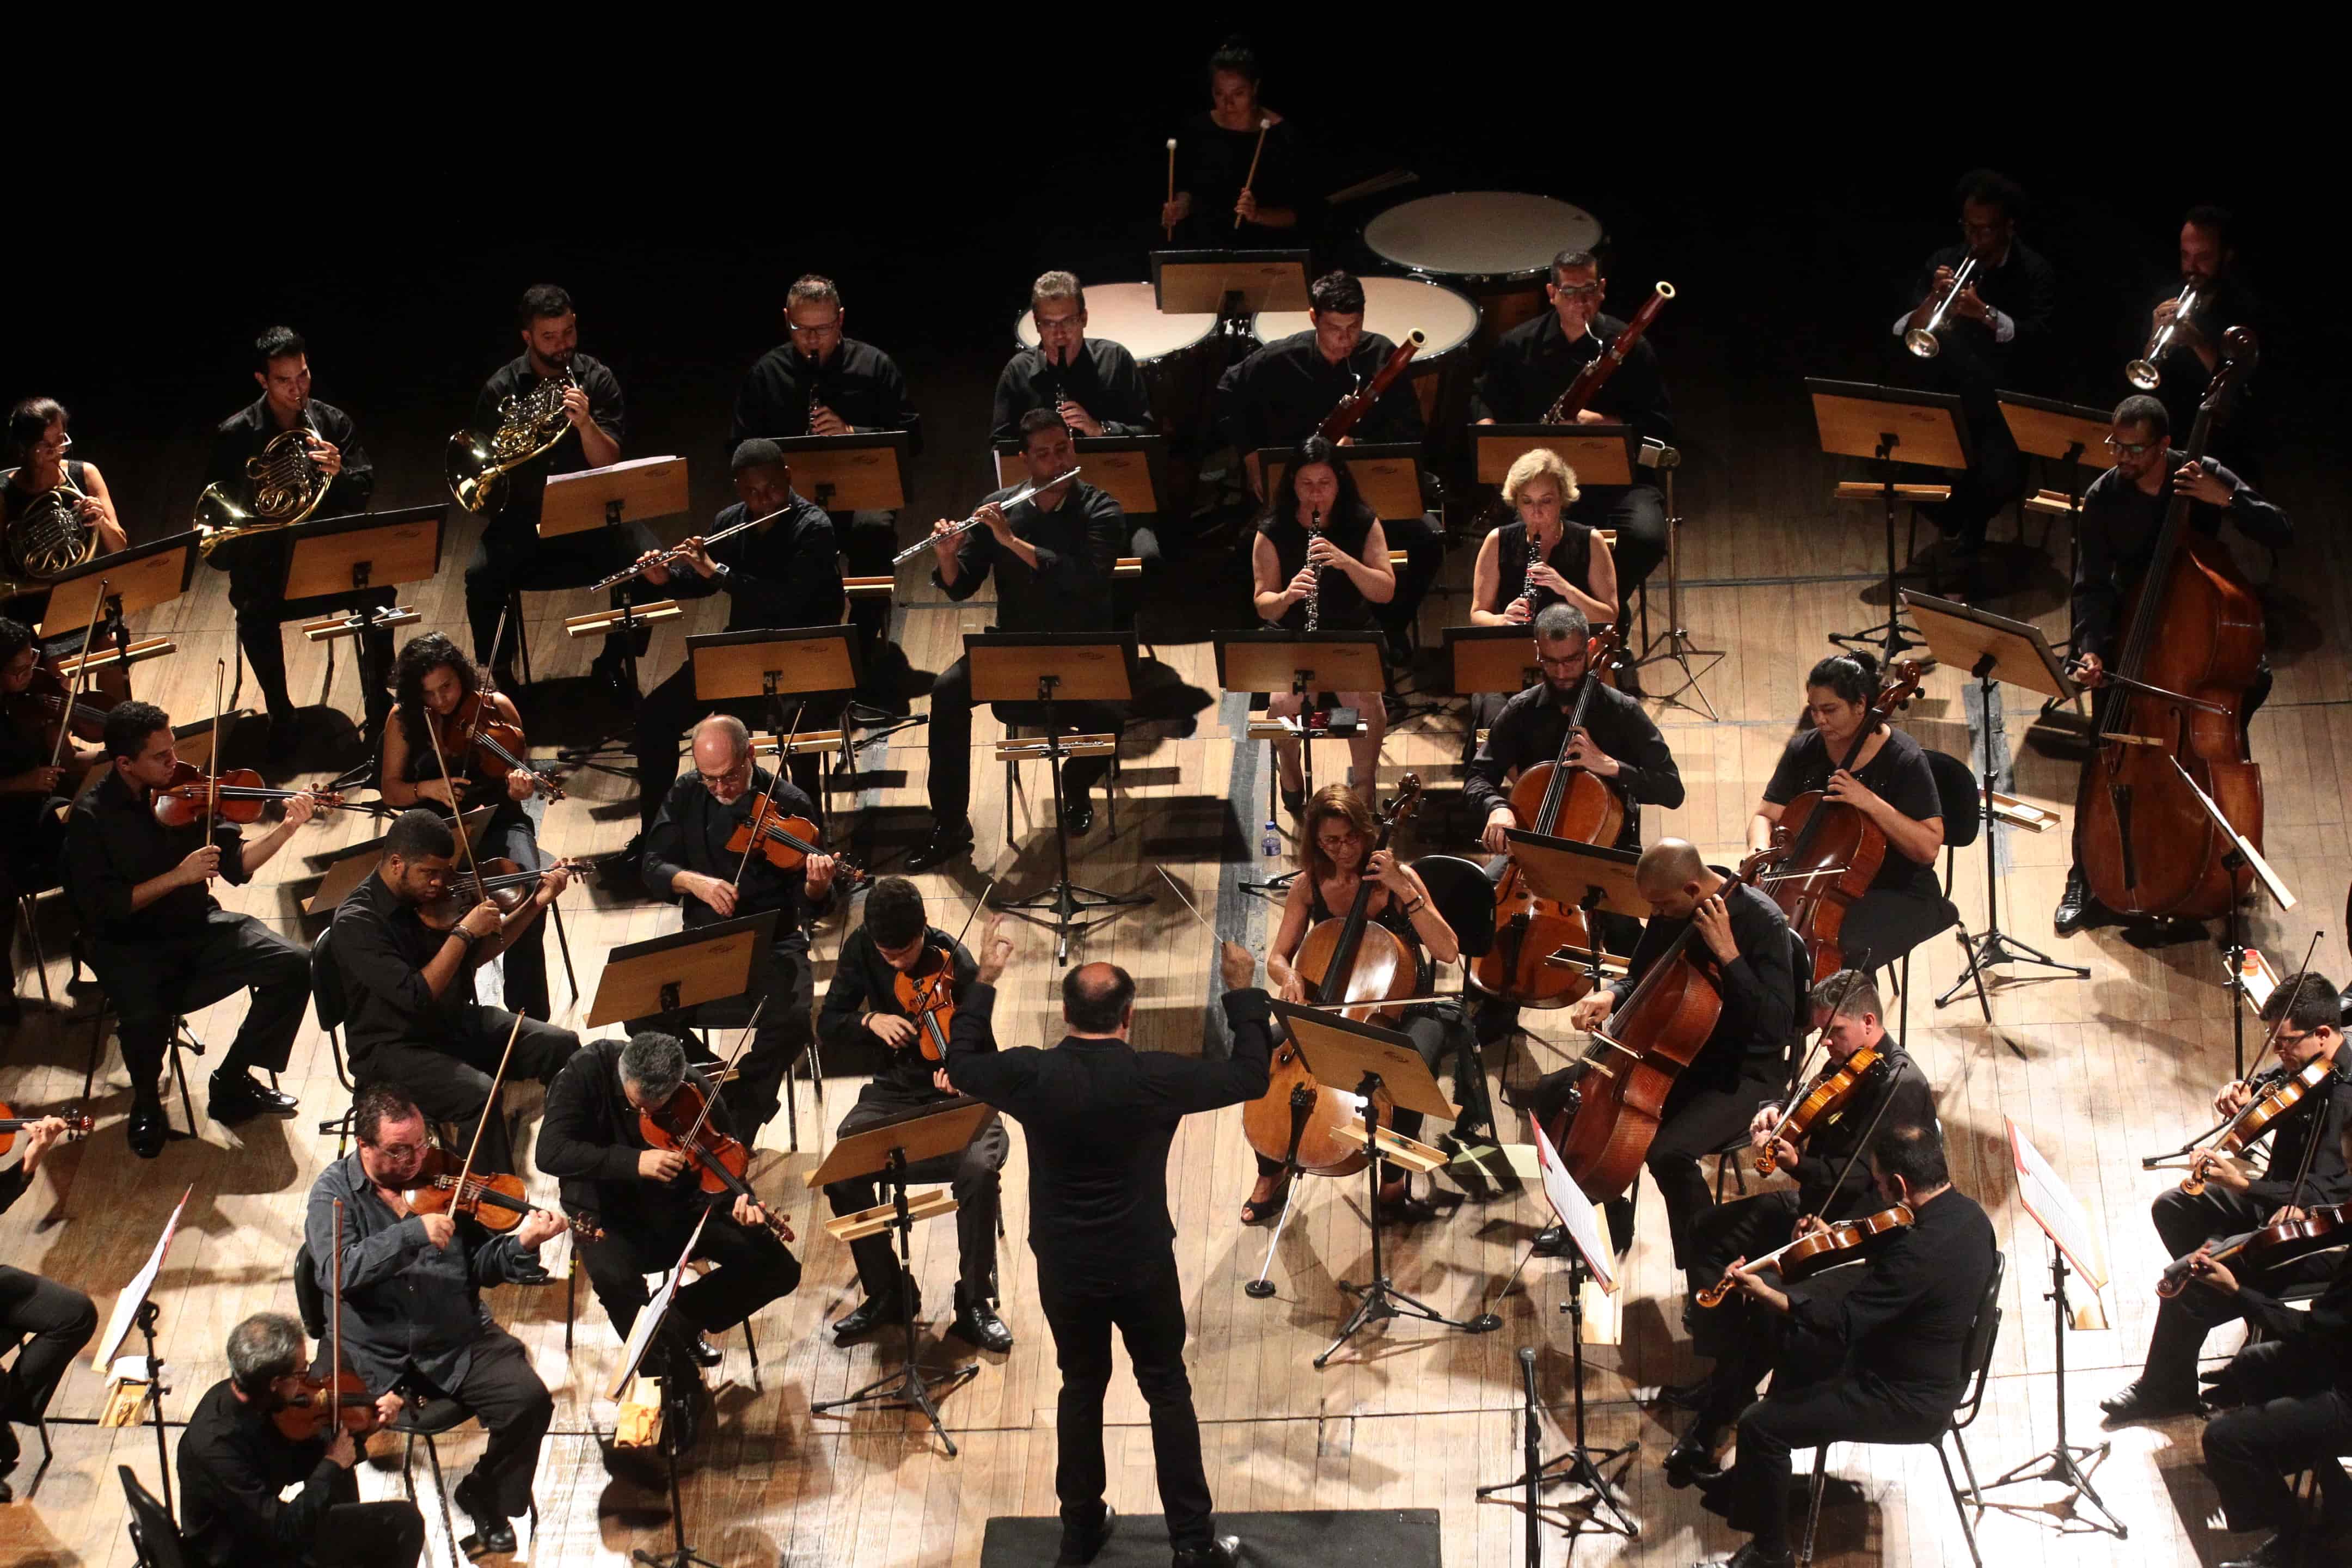 A Orquestra de Santos será reforçada com novos músicos por conta do concurso público